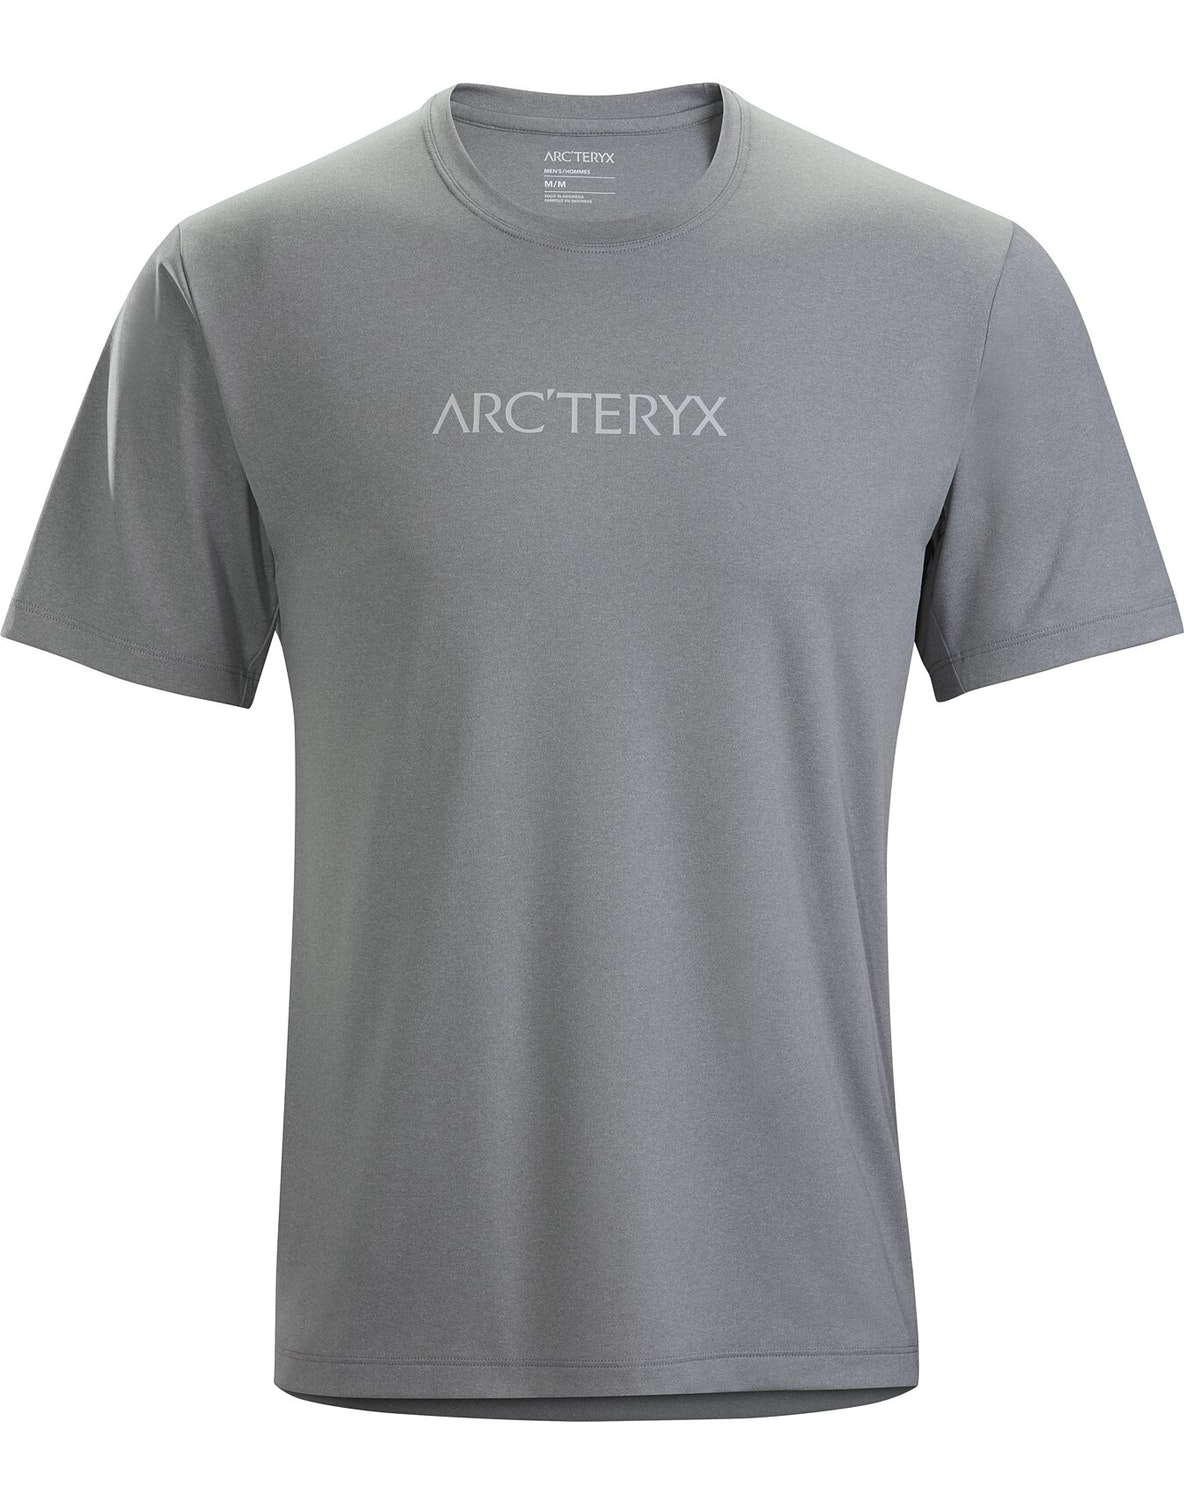 T-shirt Arc'teryx Remige Word Uomo Grigie - IT-5431365